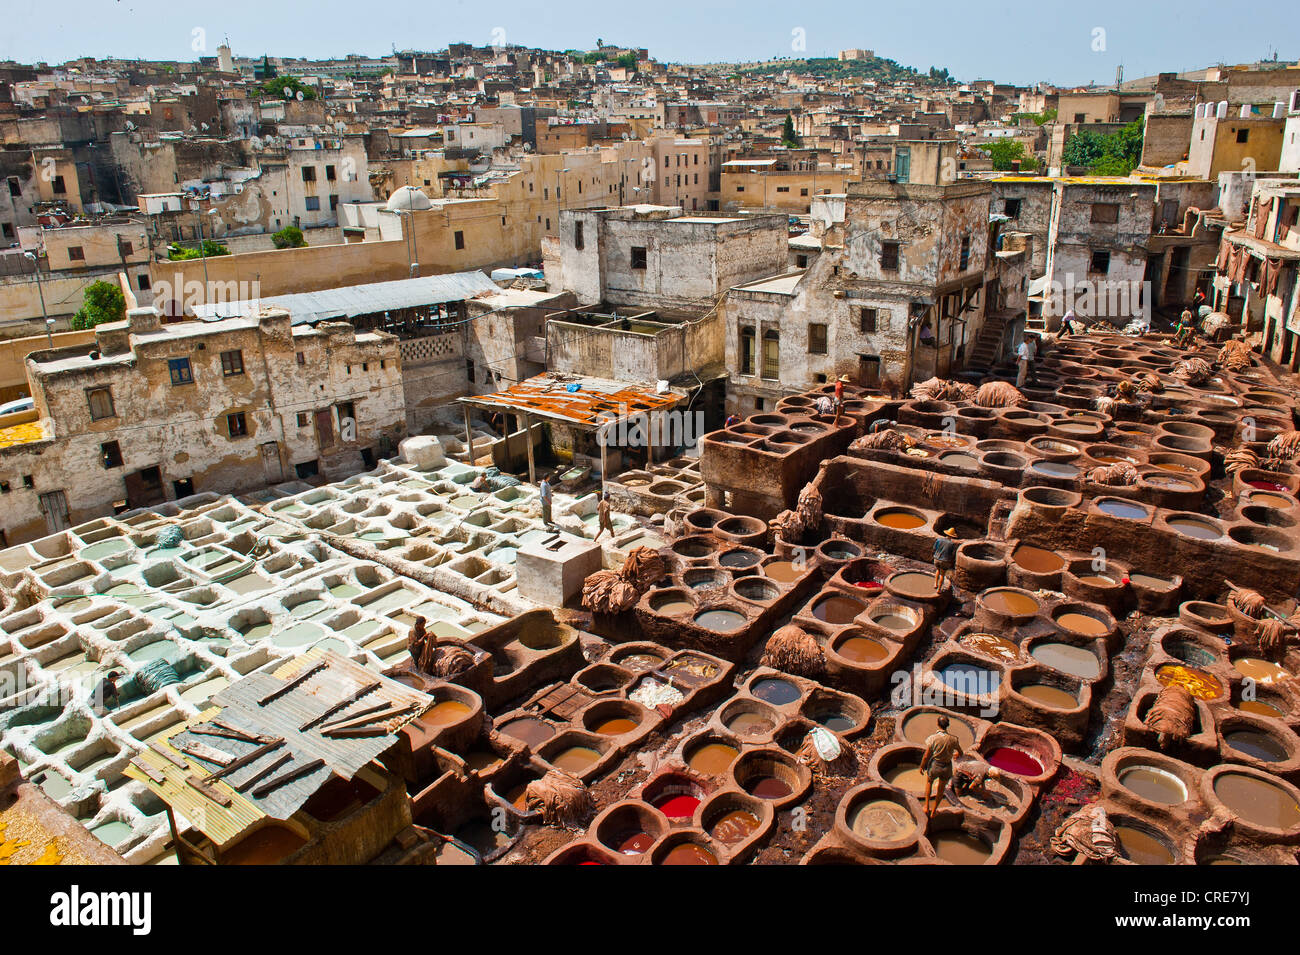 La conceria tradizionale con la concia e tintura di box, centro storico della città o la Medina, sito Patrimonio Mondiale dell'UNESCO, Fez, in Marocco Foto Stock